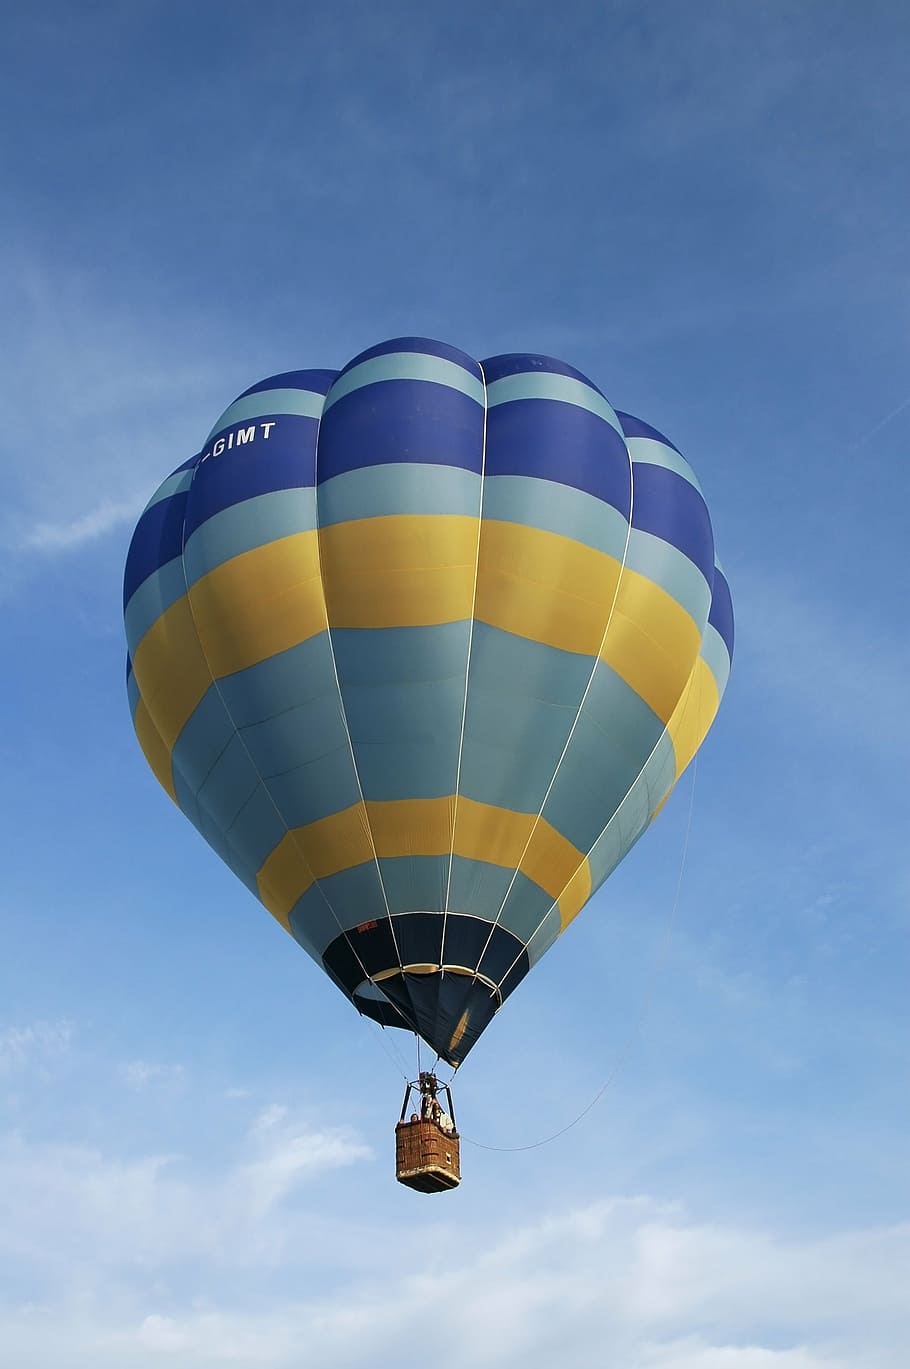 balão de ar quente, bola, céu, balão, ar, azul, veículo aéreo, transporte, vôo, aventura